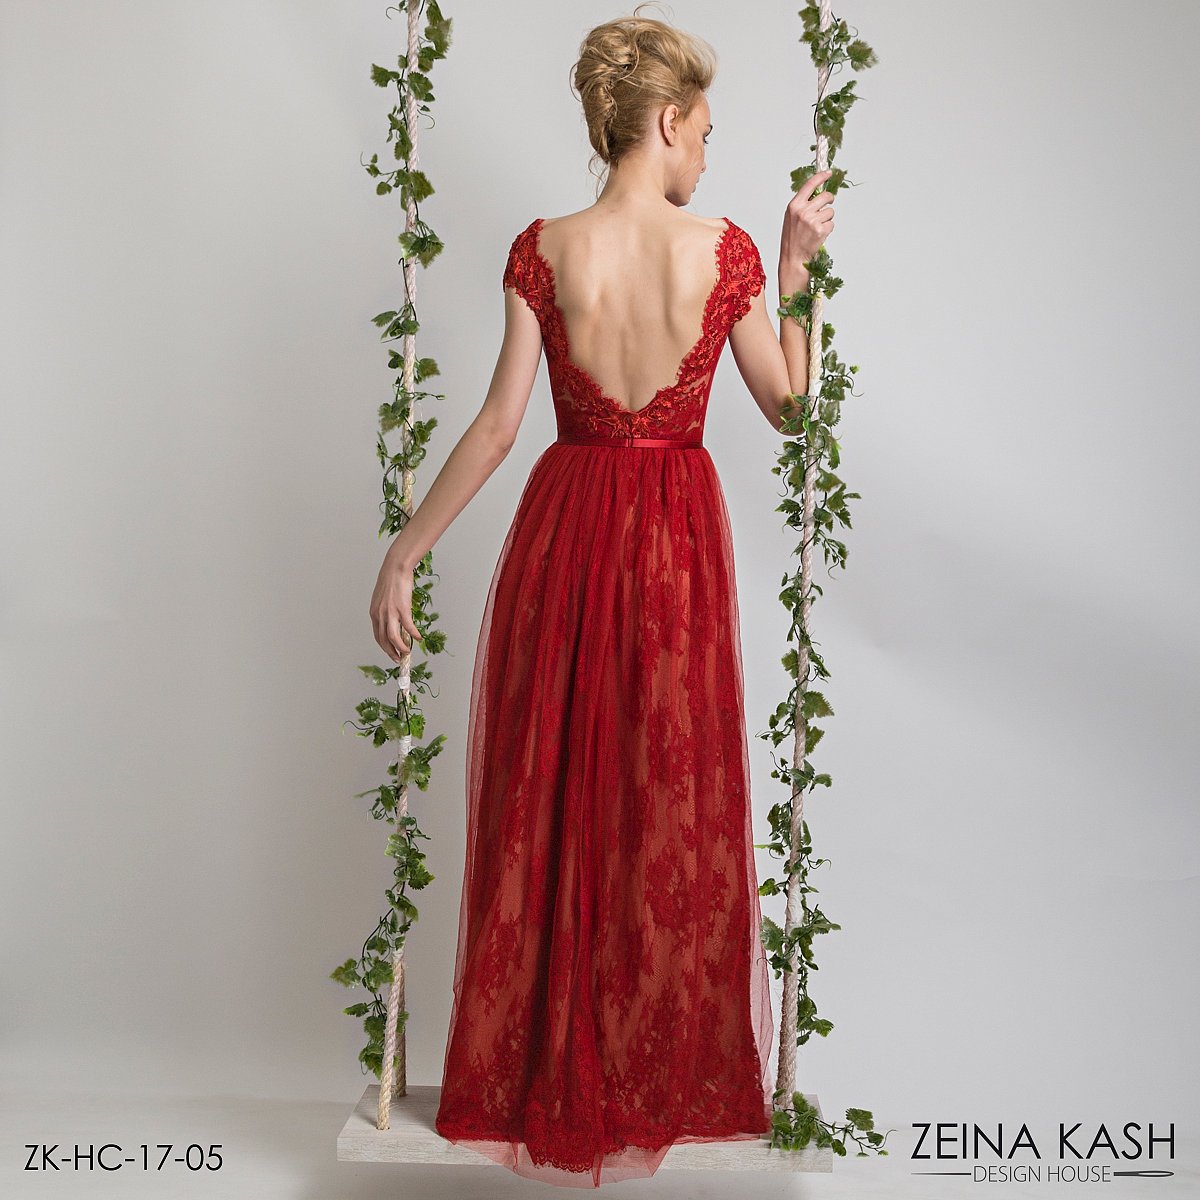 Zeina Kash Printemps-été 2017 - Haute couture - 1